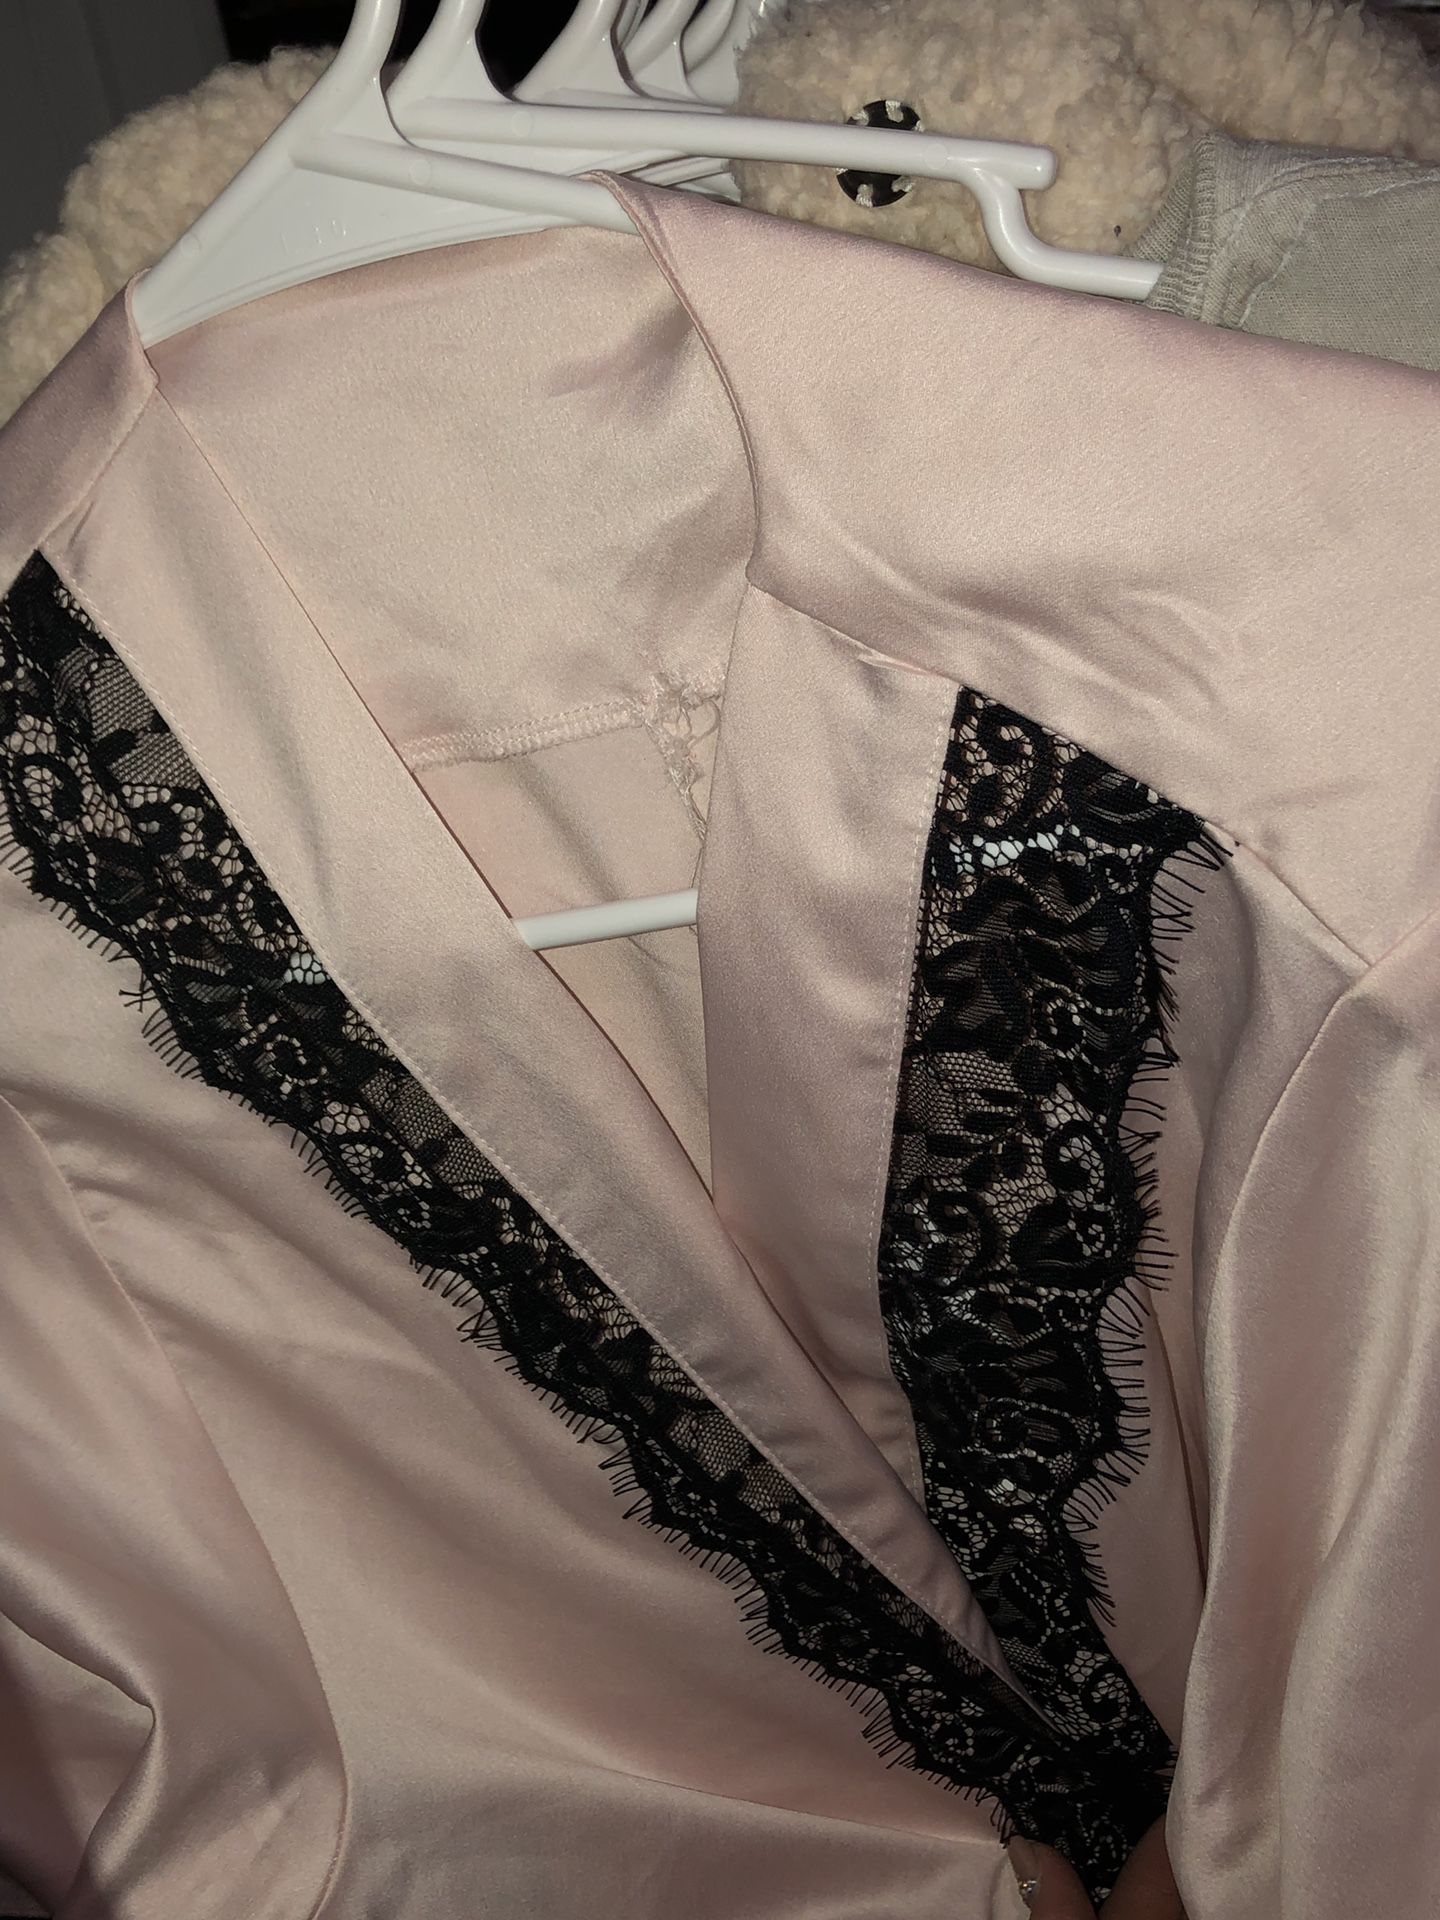 Baby pink Silky Victoria secret robe